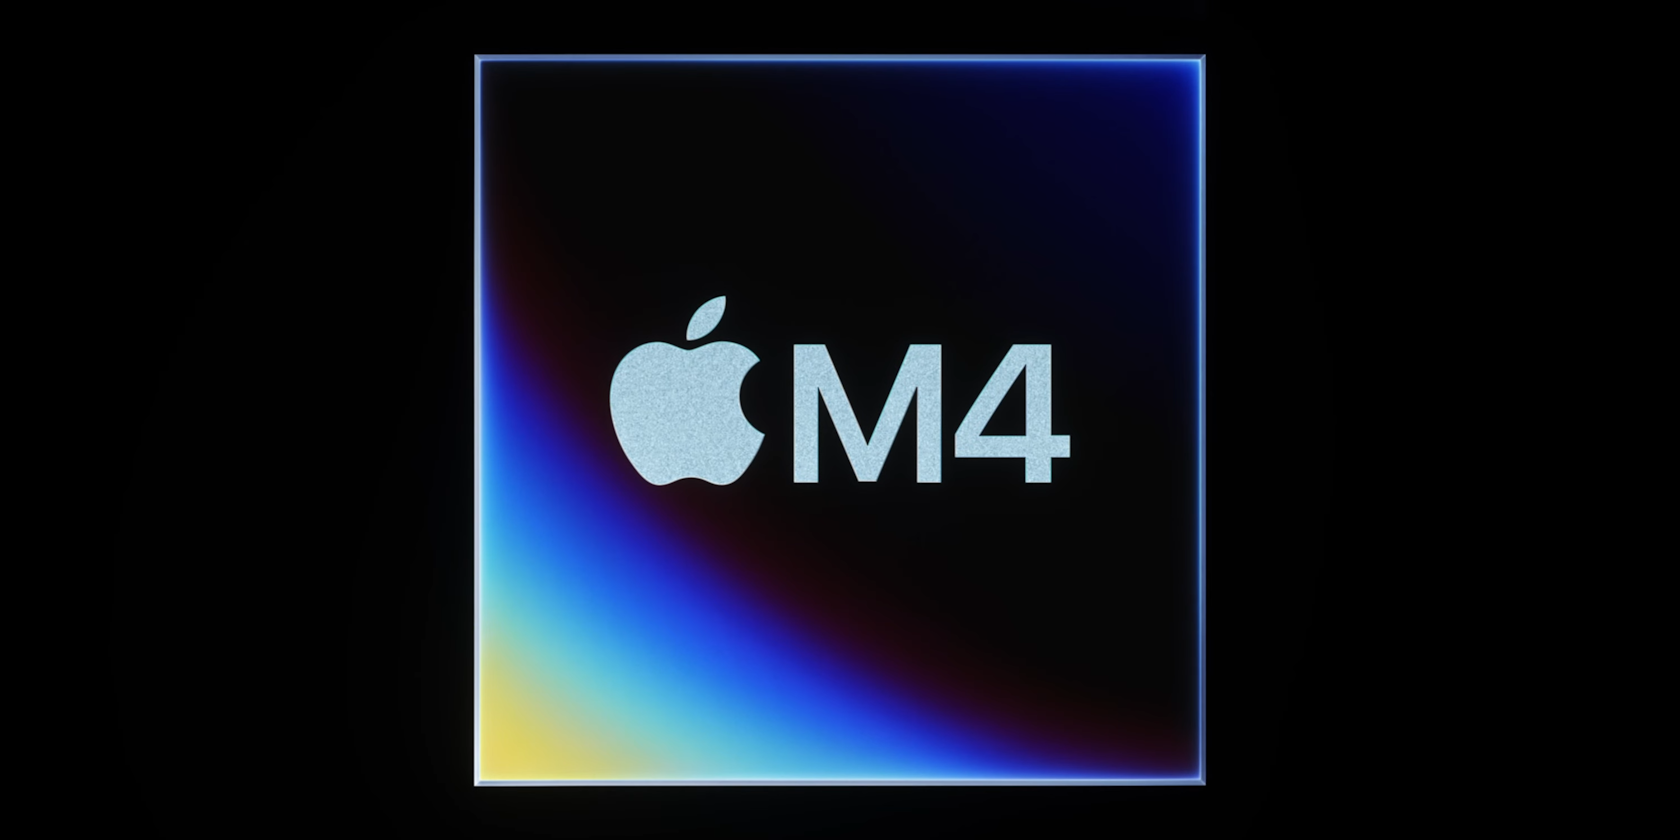 Διαφημιστική εικόνα τσιπ Apple M4